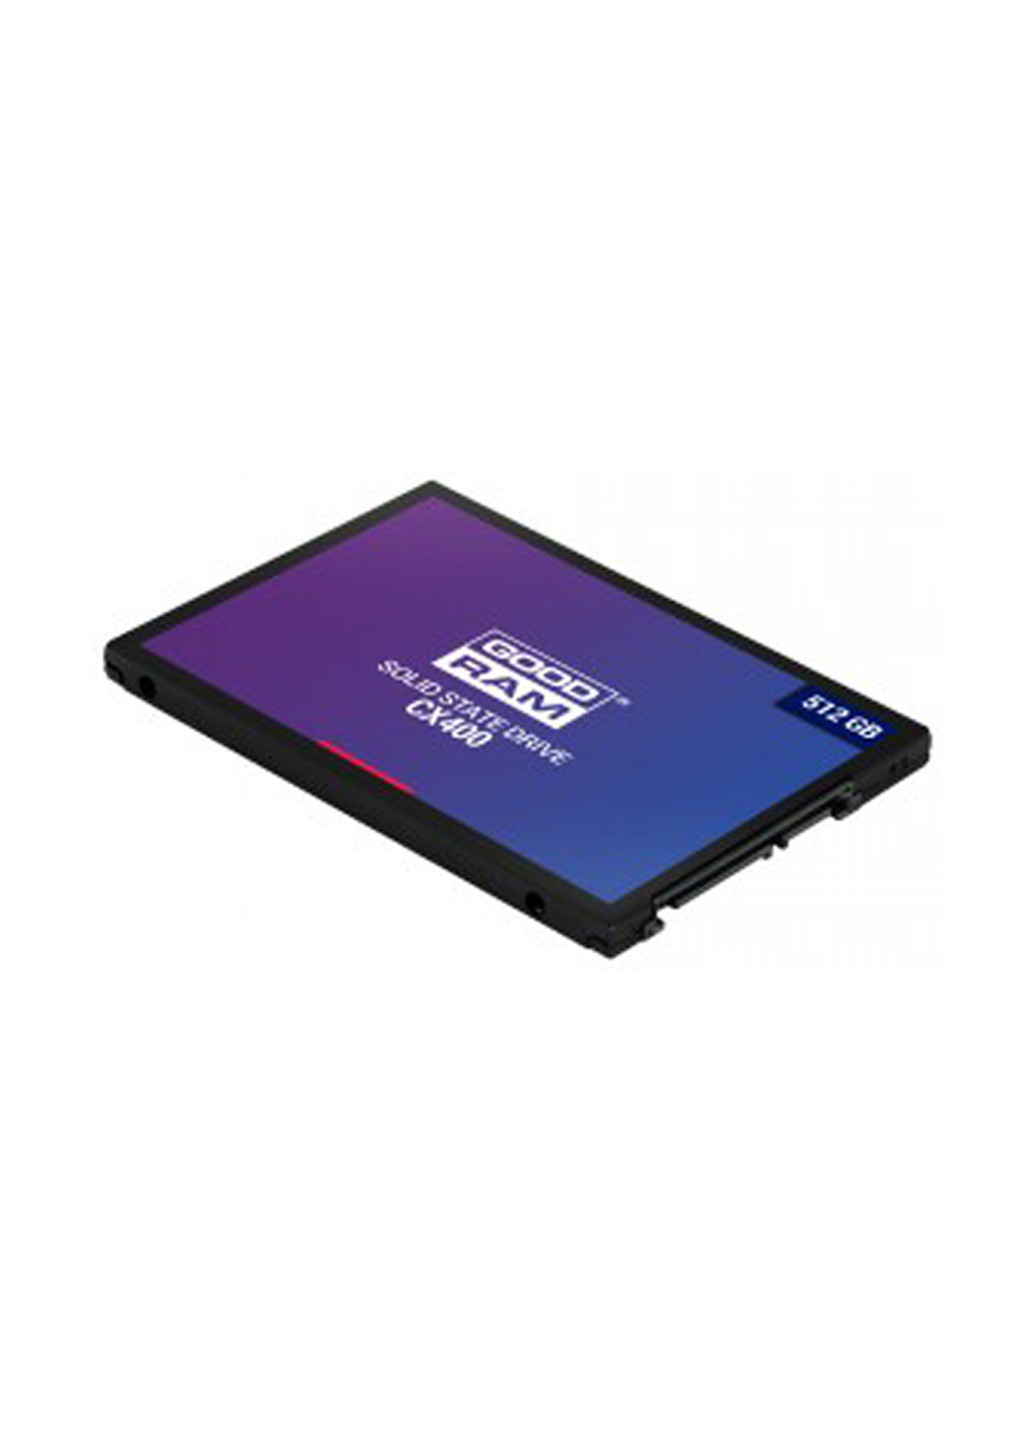 Внутрішній SSD 2.5 1TB CX400 SATA 3.0 SSDPR-CX400-01T (SSDPR-CX400-01T) Goodram внутренний ssd goodram 2.5" 1tb cx400 sata 3.0 ssdpr-cx400-01t (ssdpr-cx400-01t) (136893986)